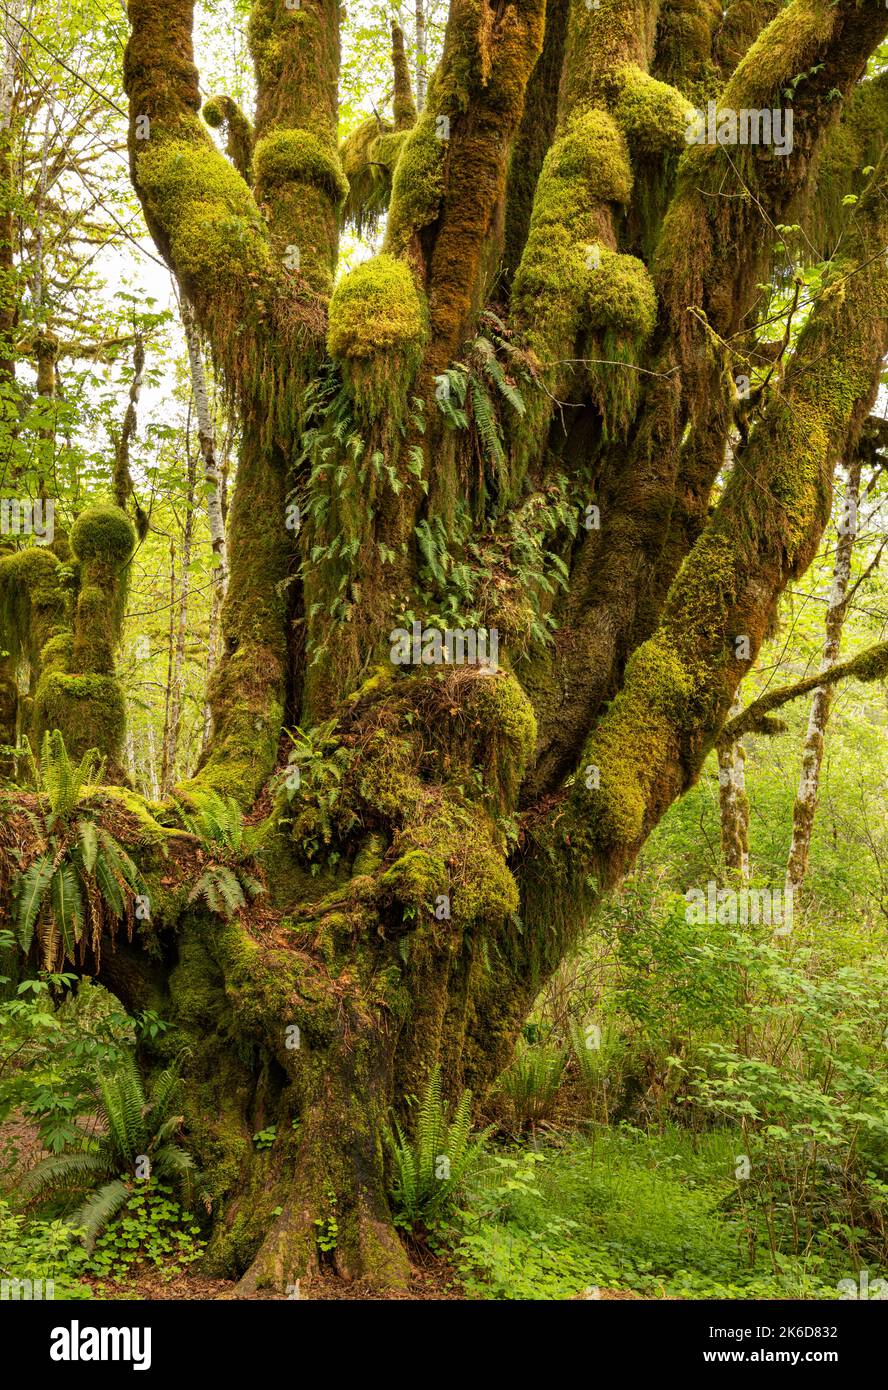 WA22241-00...WASHINGTON - albero dell'acero delle foglie grandi che serve come giardino per i vari tipi di muschio e felci nella foresta pluviale di Quinault di nazionale olimpica Foto Stock